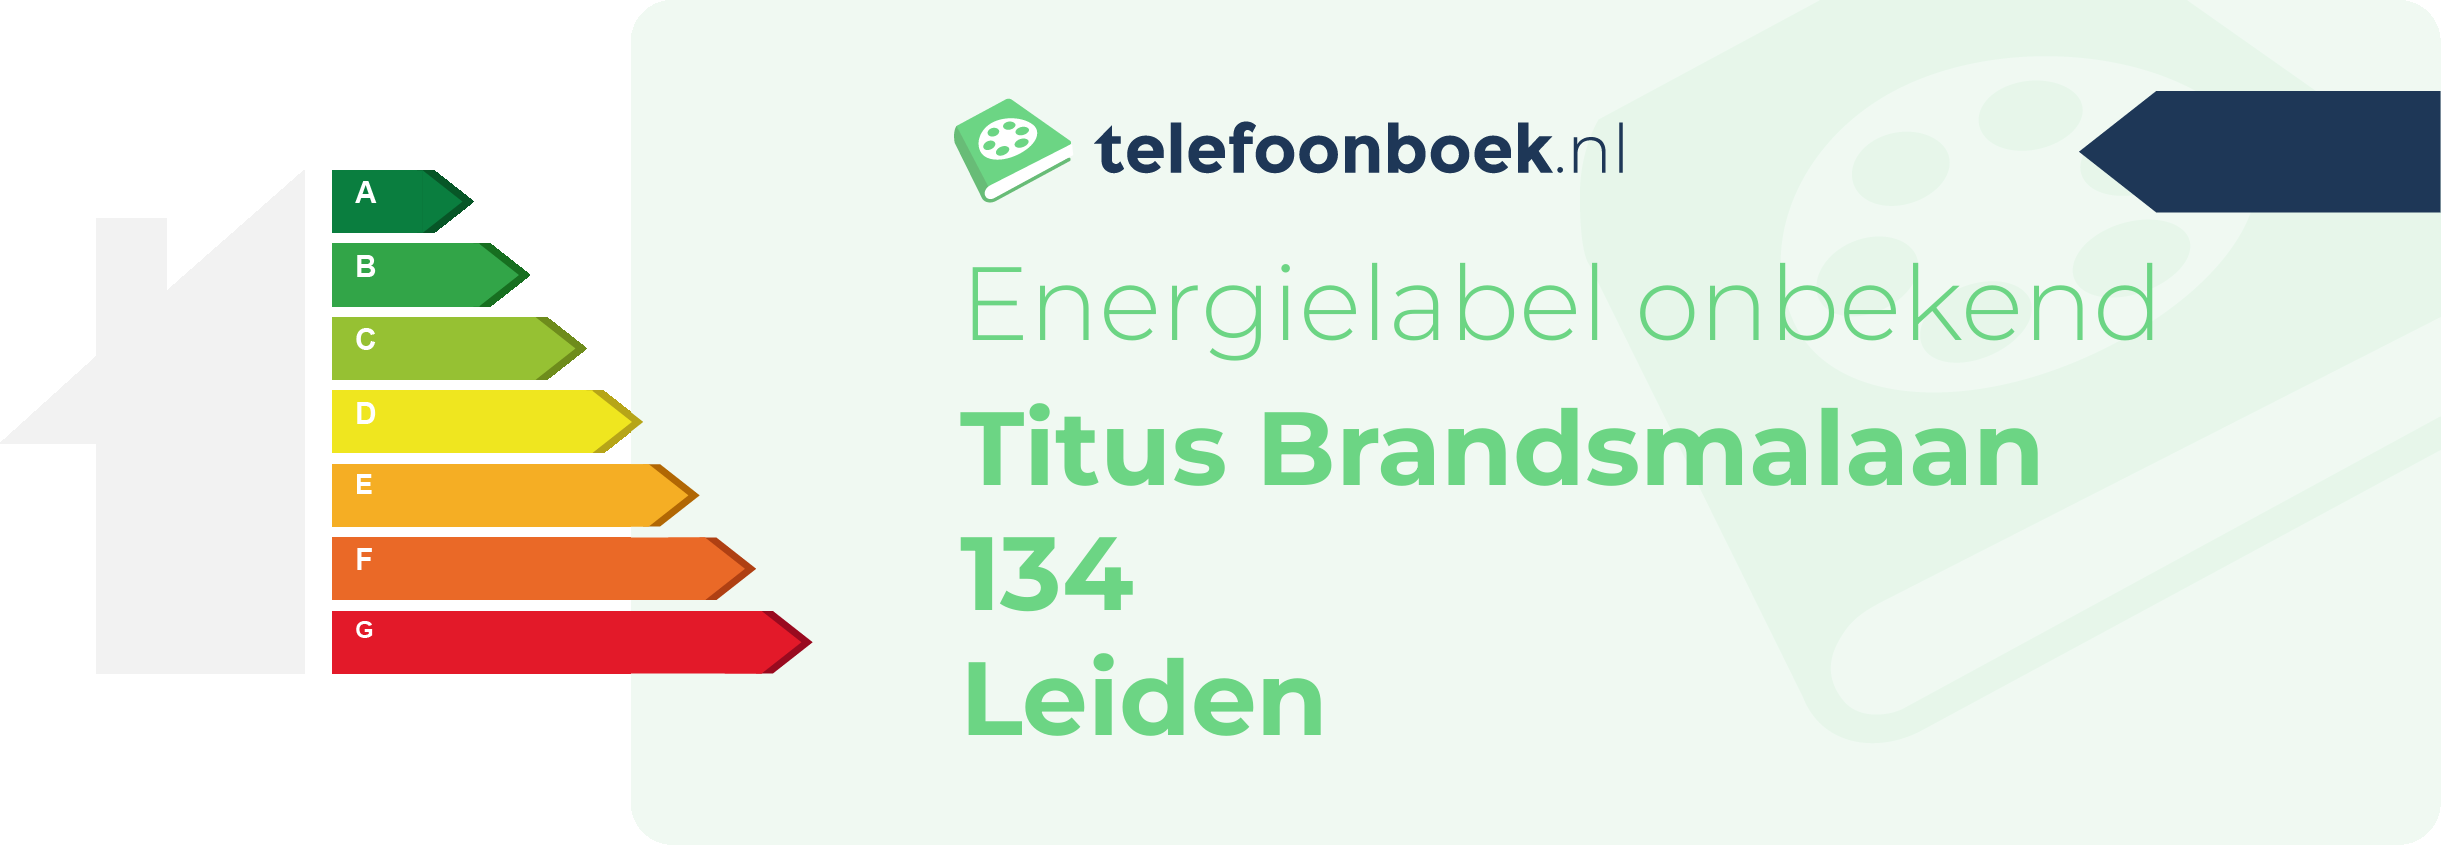 Energielabel Titus Brandsmalaan 134 Leiden